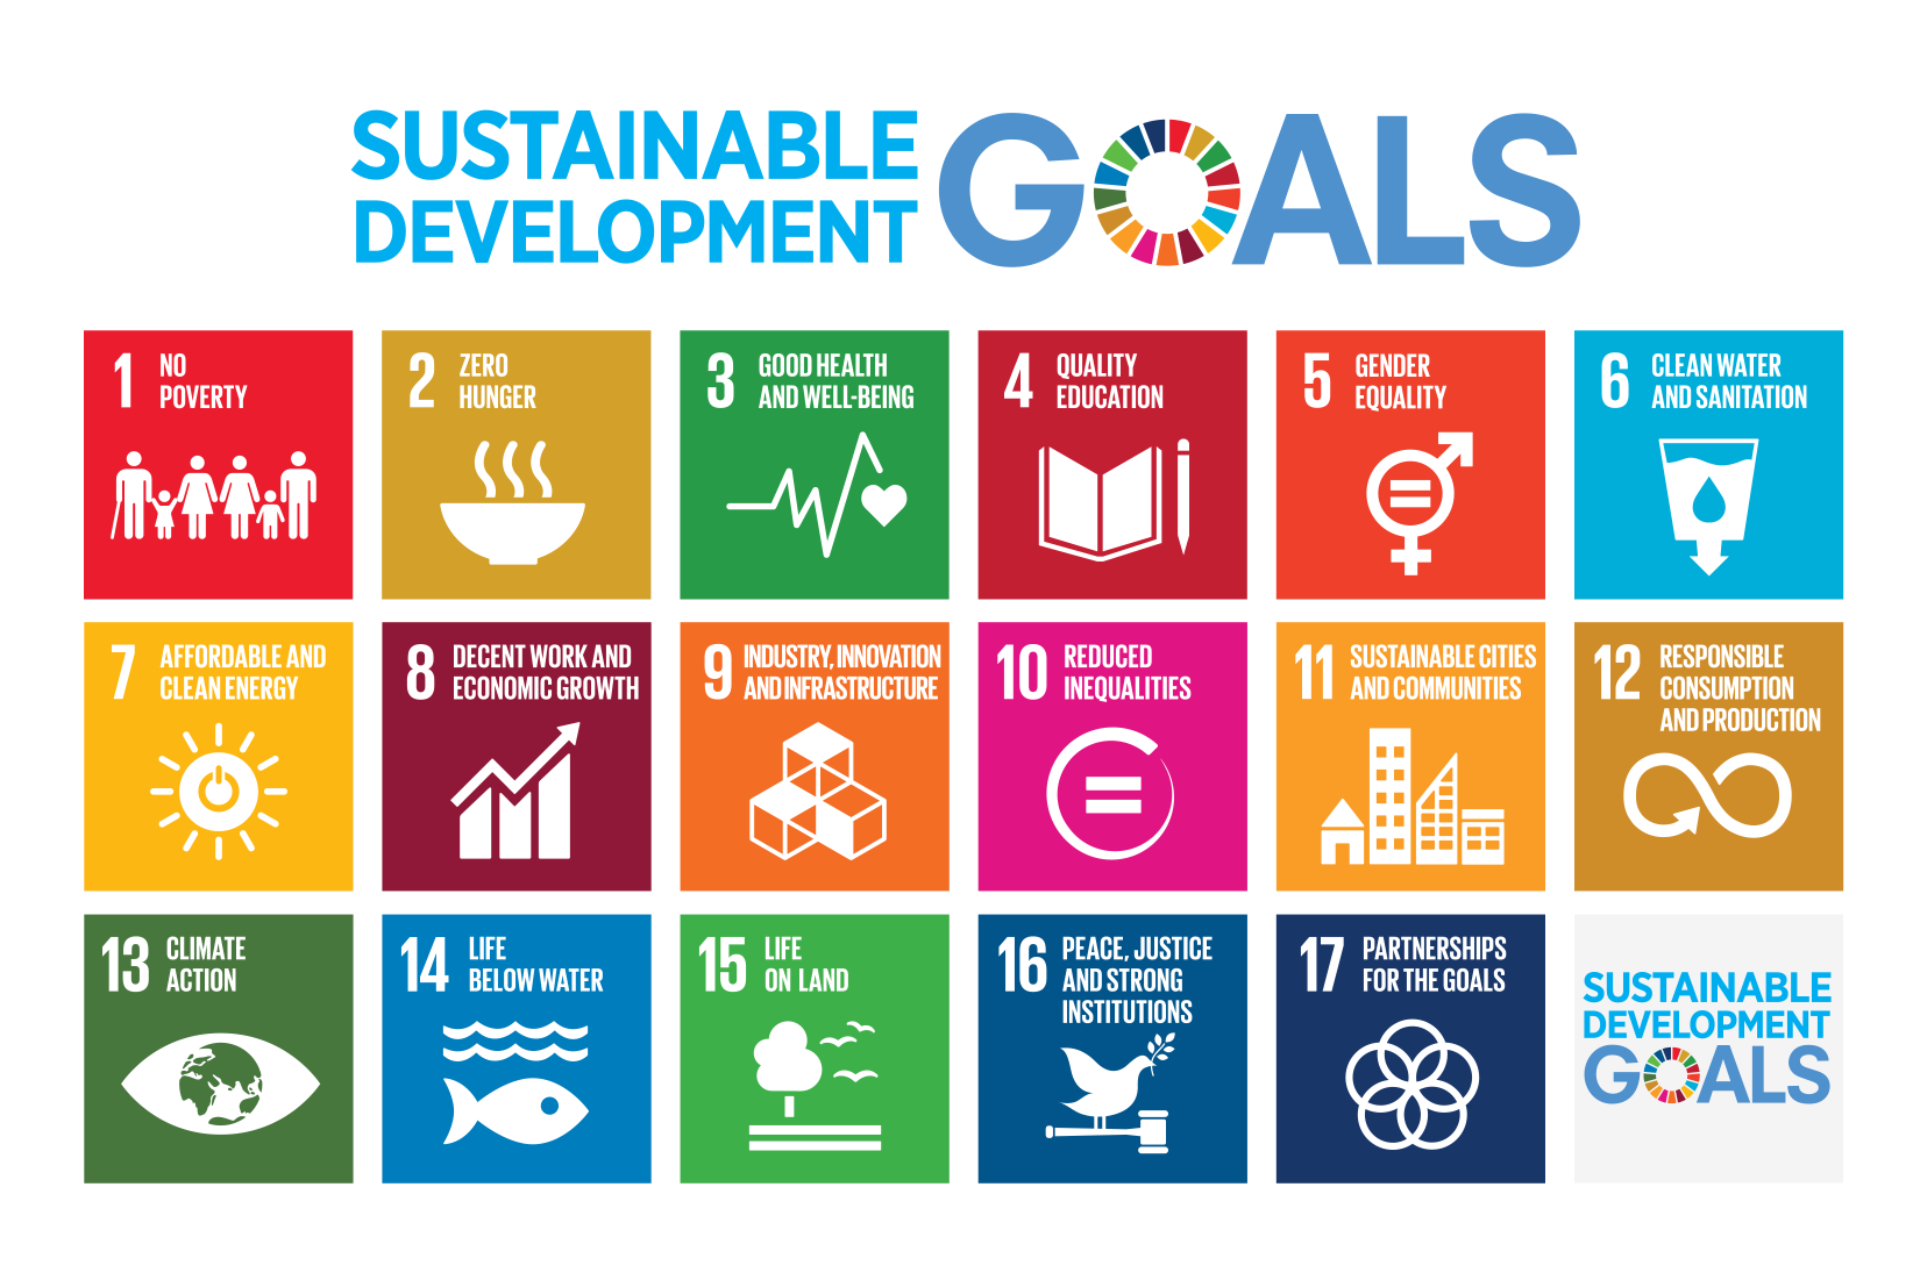 Цели оон в области развития. Цели ООН В области устойчивого развития до 2030. 17 Целей устойчивого развития ЦУР ООН. Цели устойчивого развития ООН 2015-2030. Цели устойчивого развития на период до 2030 года.